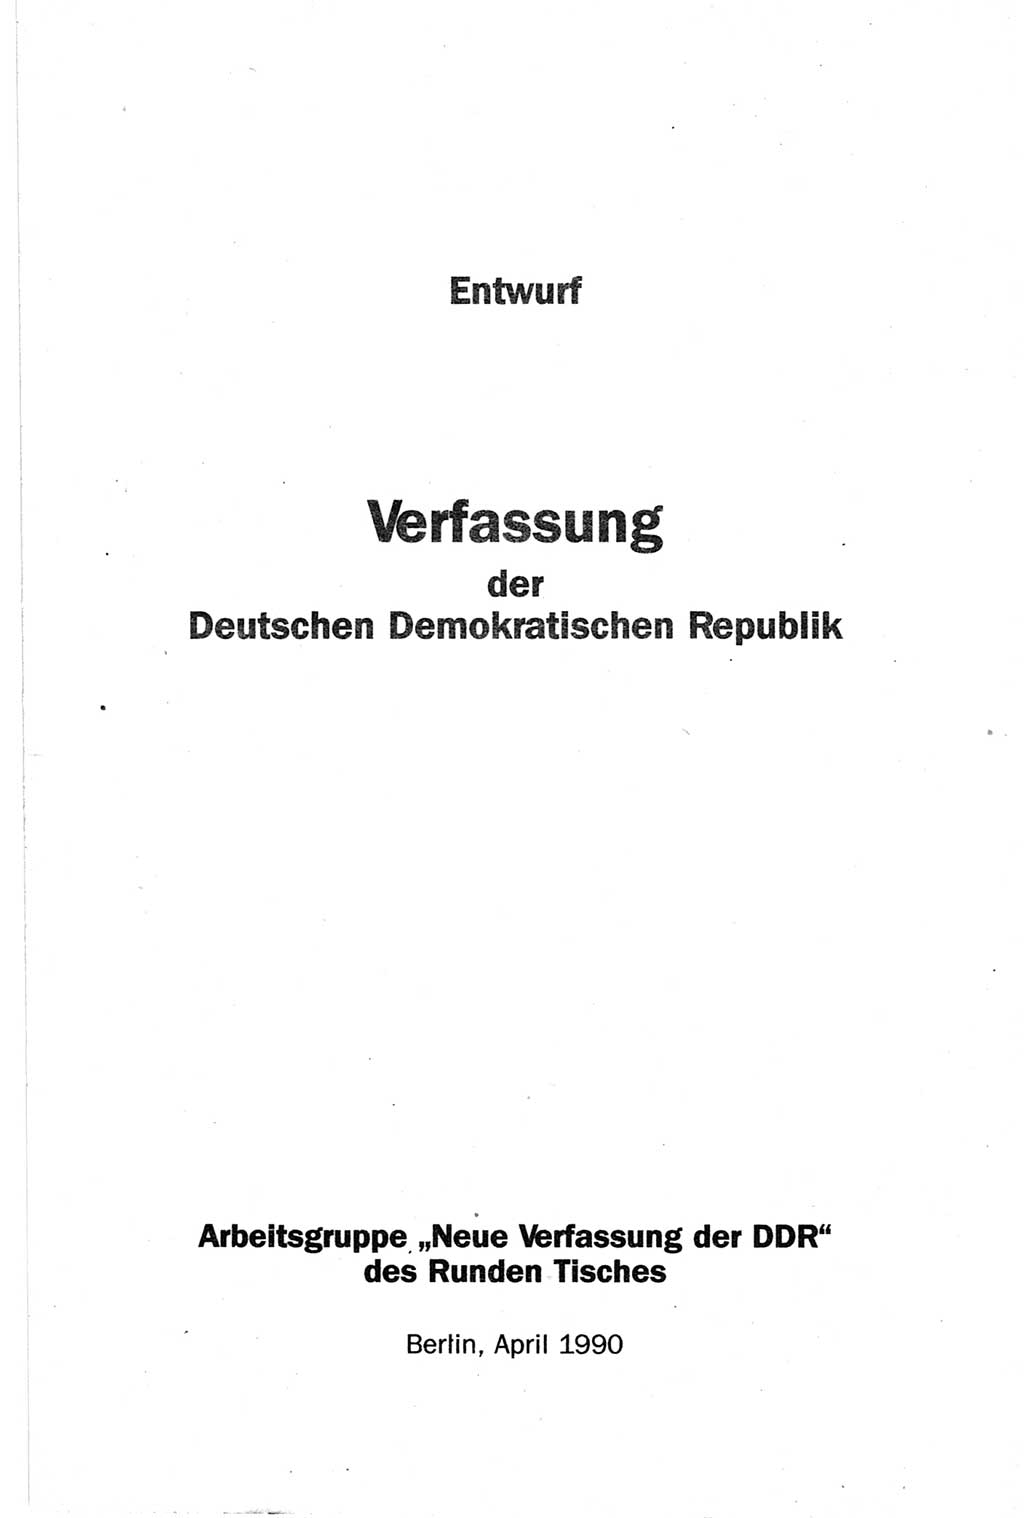 Entwurf Verfassung der Deutschen Demokratischen Republik (DDR), Arbeitsgruppe "Neue Verfassung der DDR" des Runden Tisches, Berlin 1990, Seite 3 (Entw. Verf. DDR 1990, S. 3)